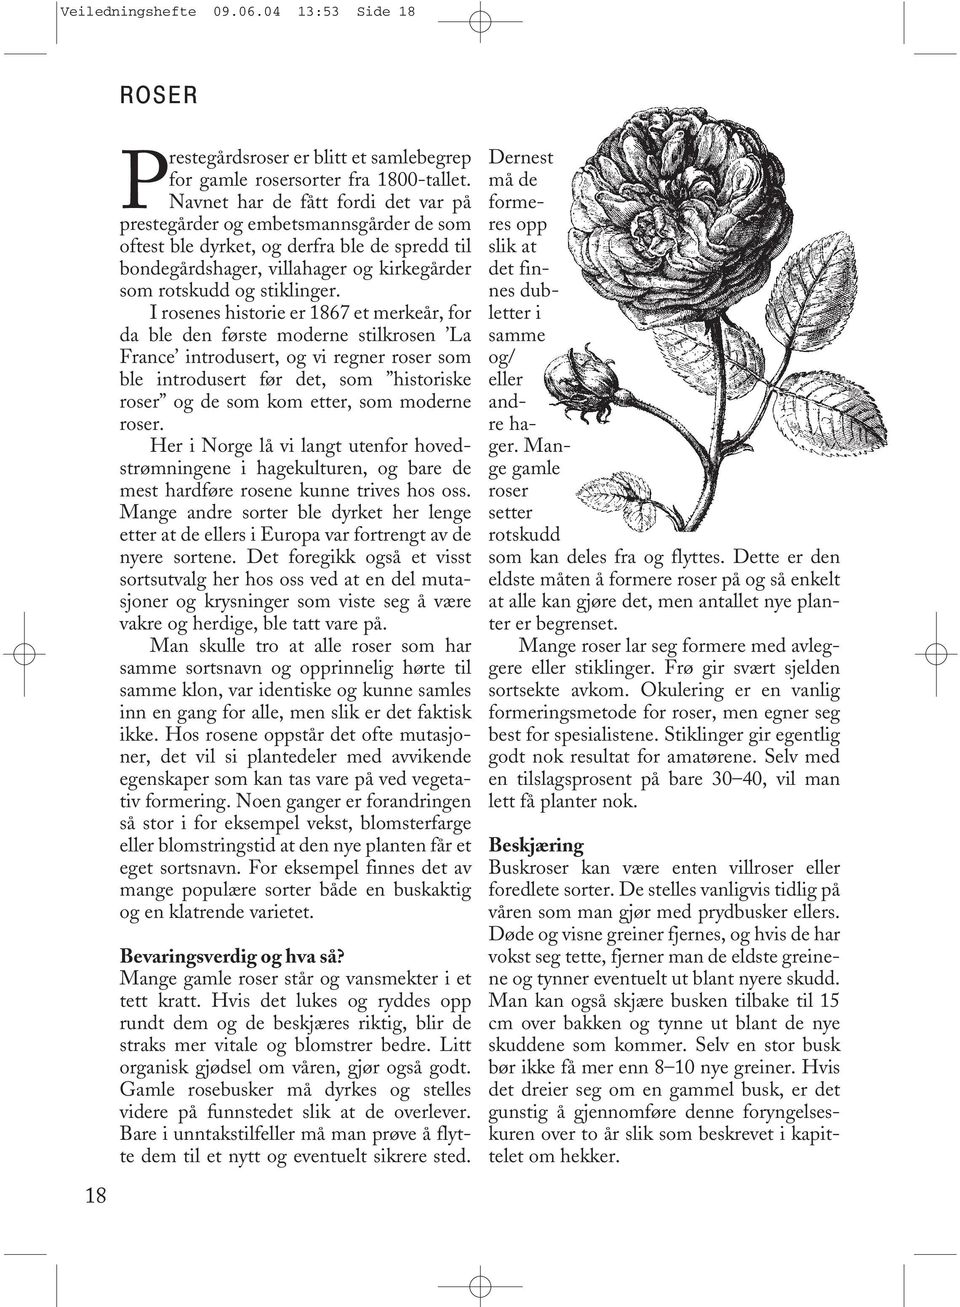 I rosenes historie er 1867 et merkeår, for da ble den første moderne stilkrosen La France introdusert, og vi regner roser som ble introdusert før det, som historiske roser og de som kom etter, som